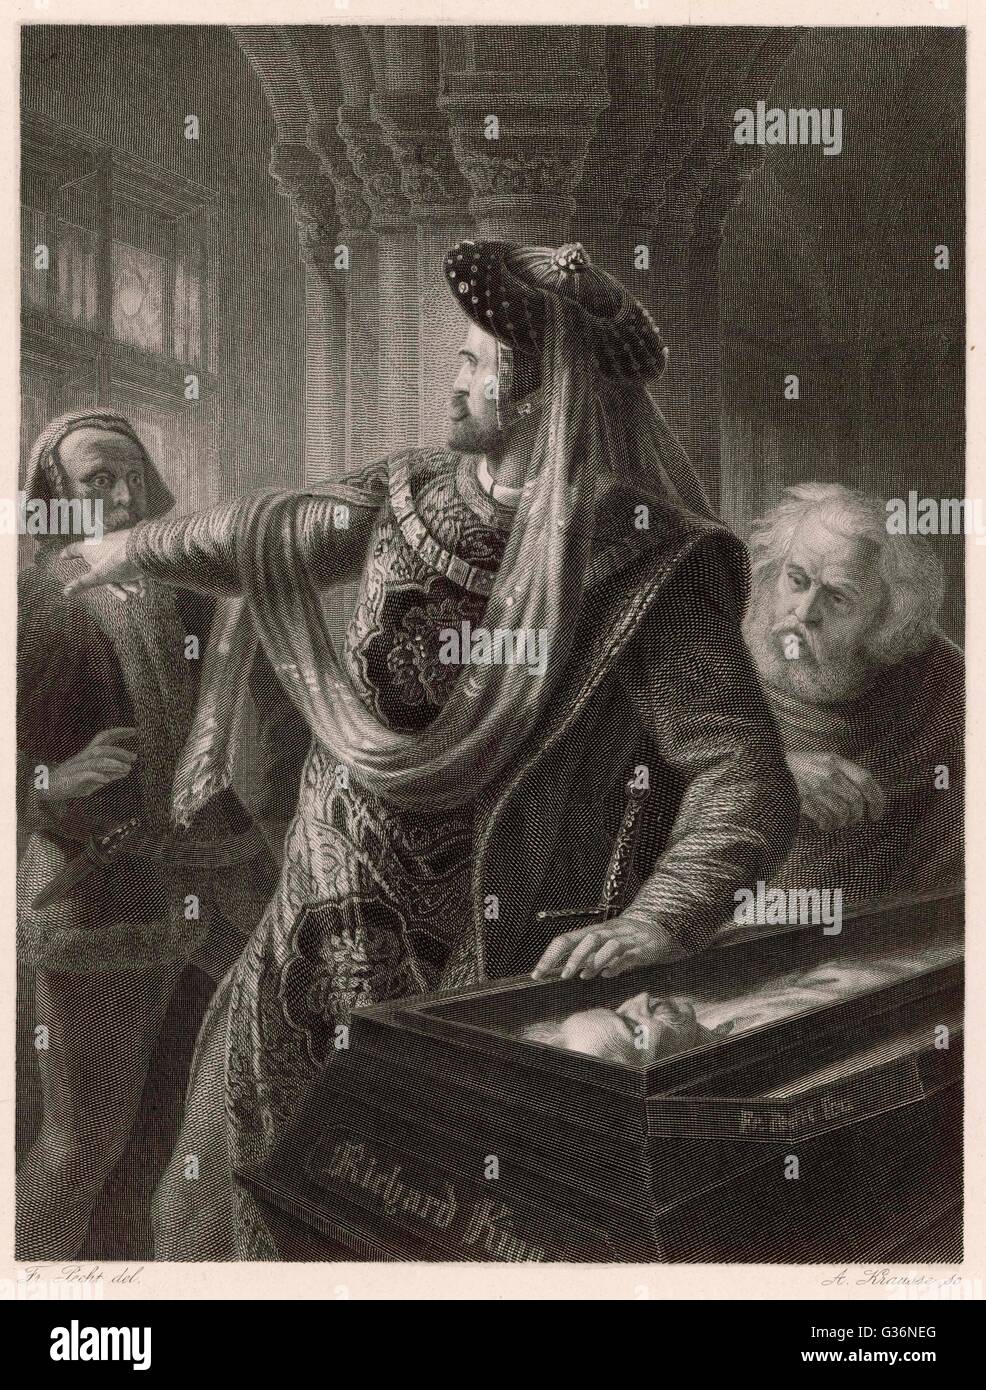 Une scène de l'histoire jouer Shakespeare, Richard II, dans lequel Bolingbroke se lamente sur le cercueil de Richard. Il a pris le trône loin de Richard, mais il n'a pas l'intention pour lui d'être tués. Banque D'Images